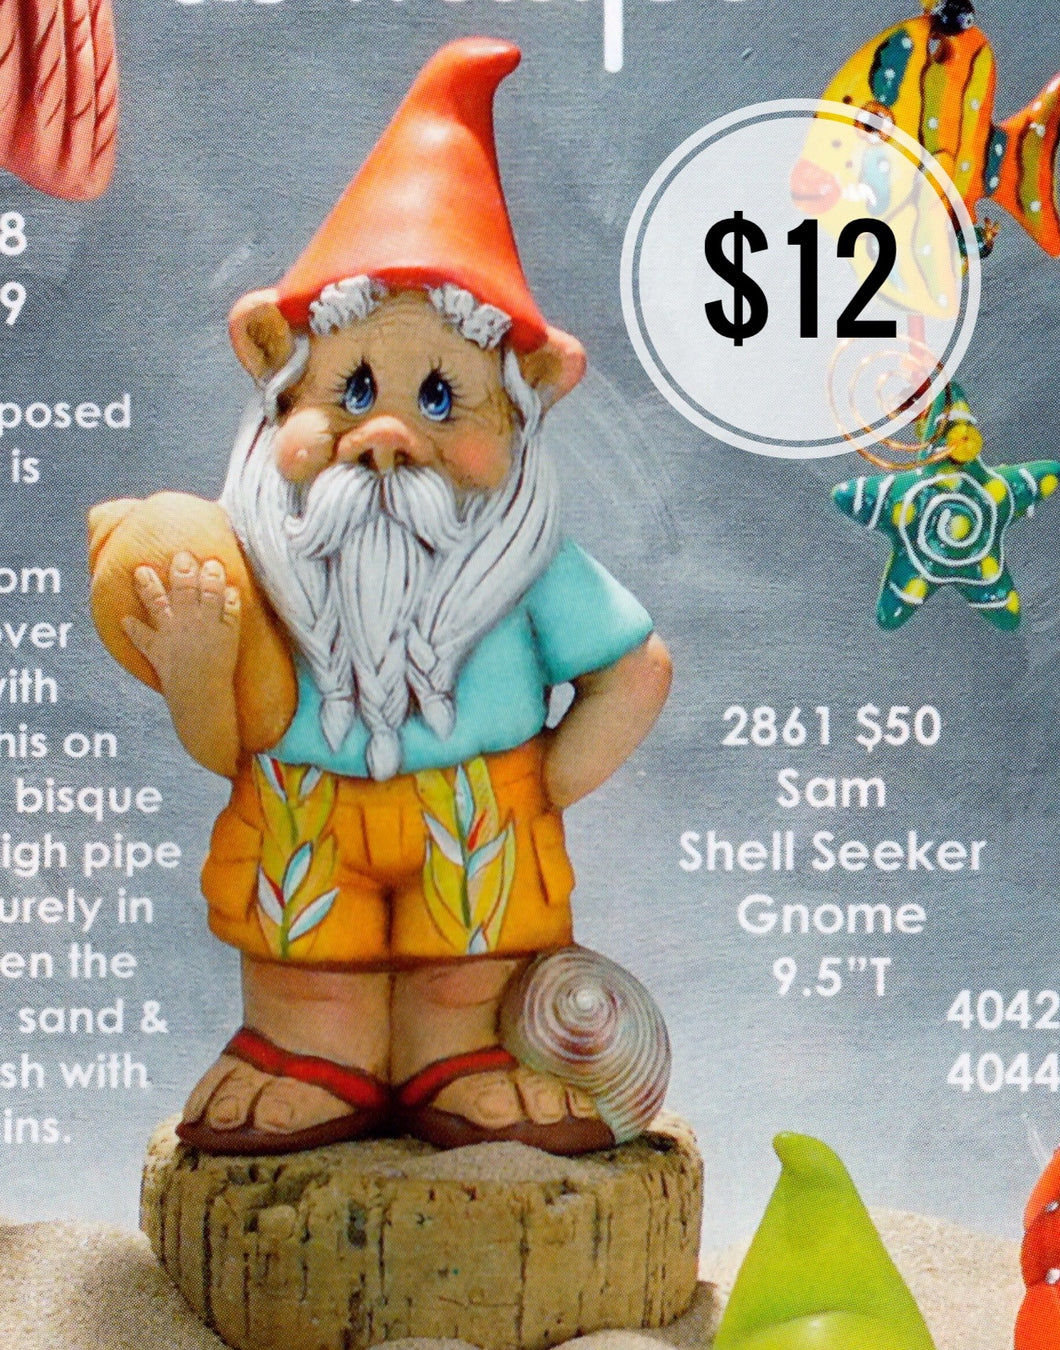 Sam Shell Seeker Beach Gnome